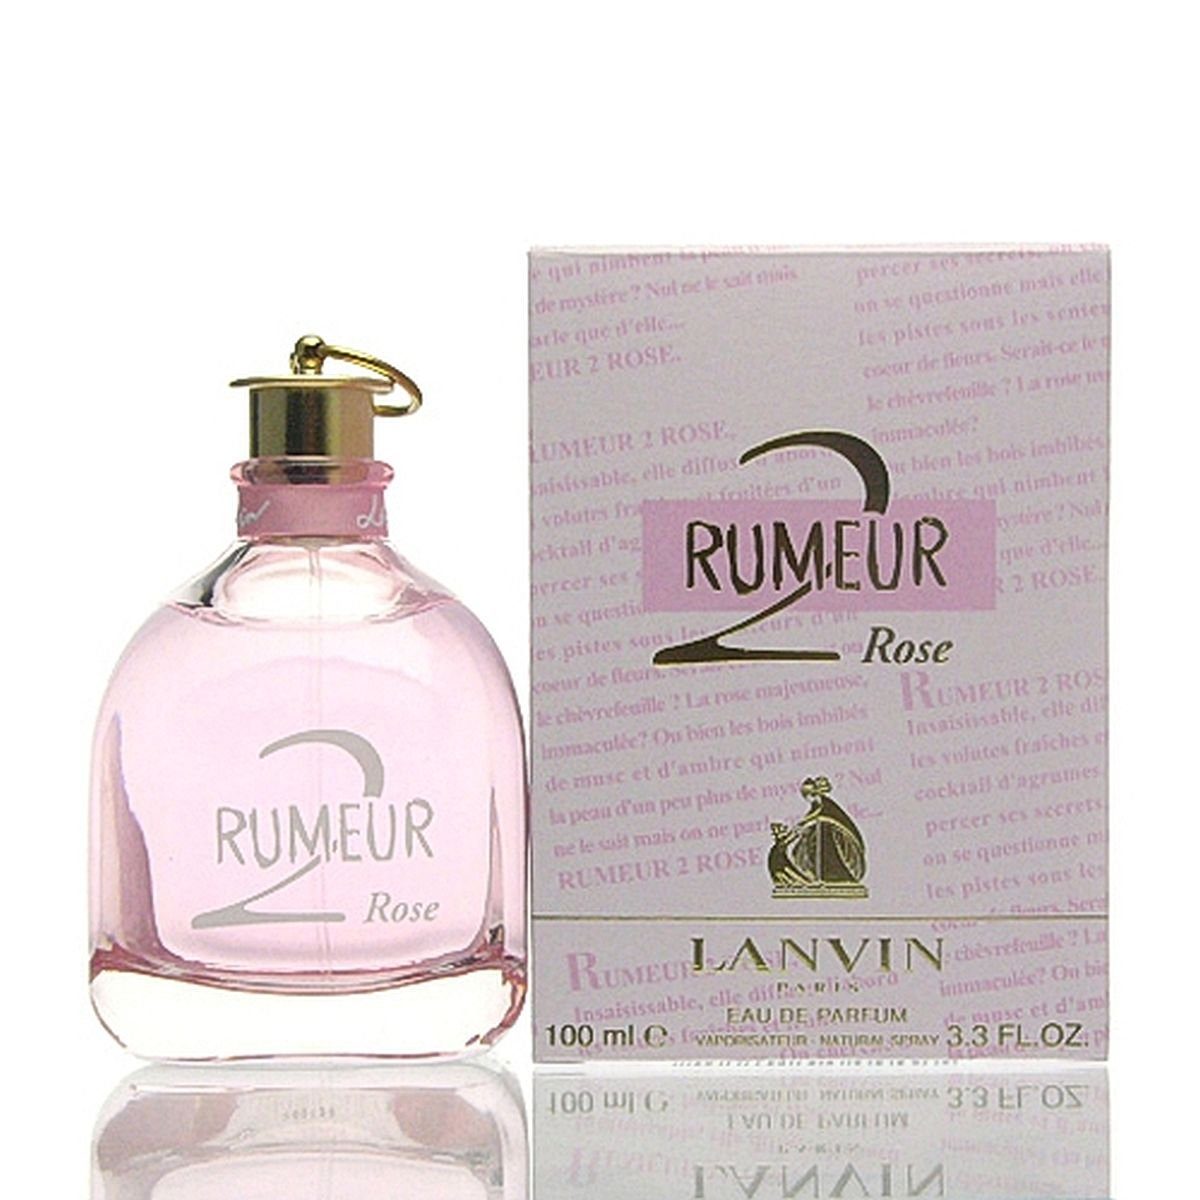 Rose 100 LANVIN Rumeur Lanvin de ml Eau Eau de Parfum Parfum 2